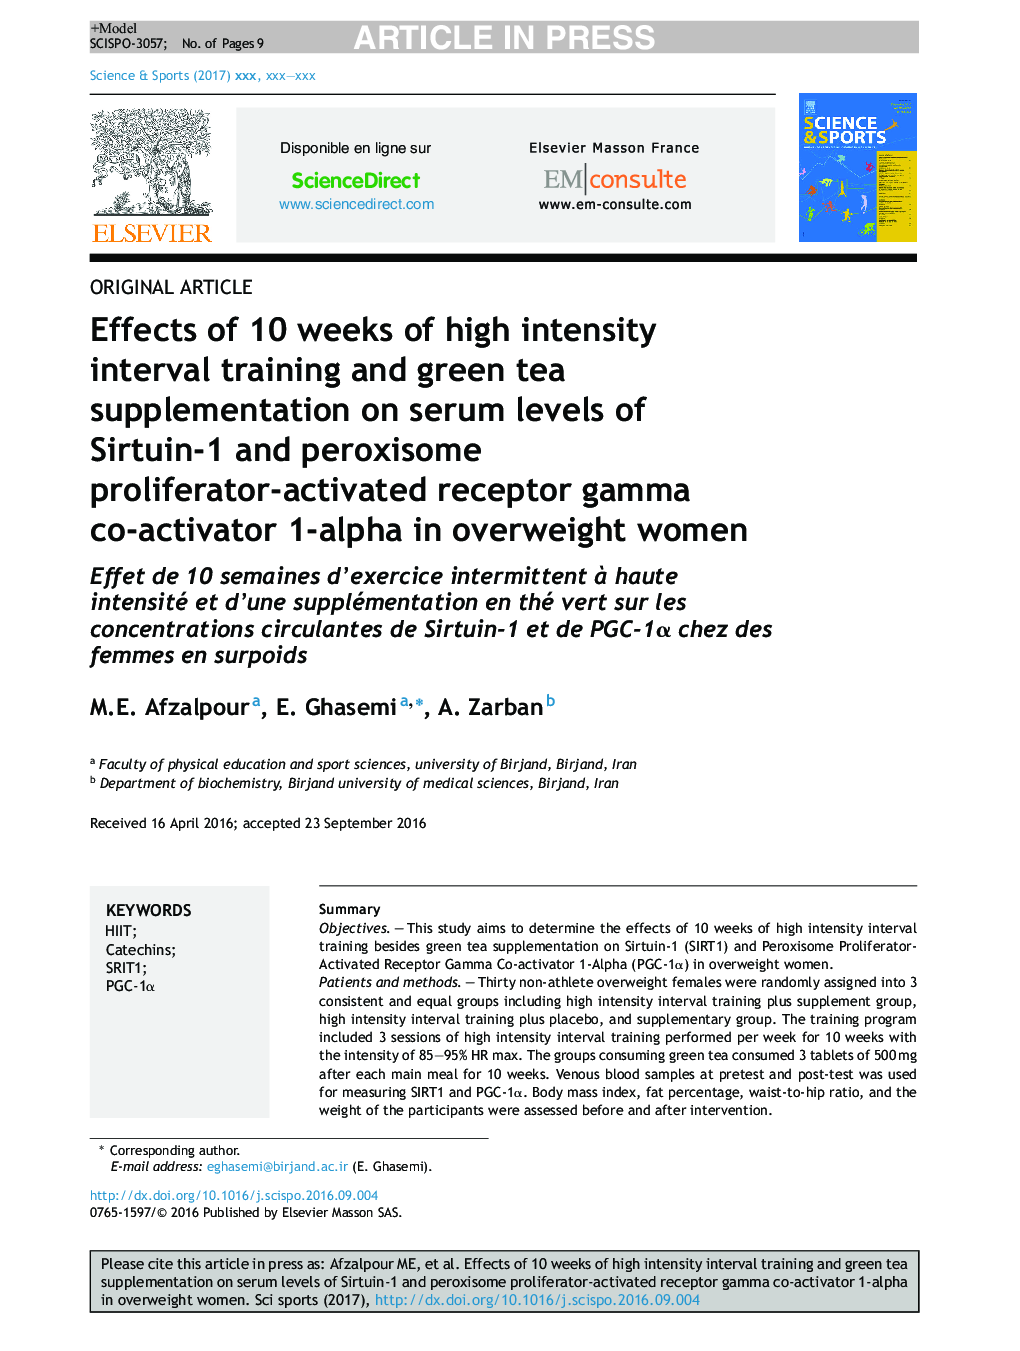 تأثیر 10 هفته تمرین تناوبی با شدت بالا و مکمل چای سبز بر سطح سرمی 1-آلفا گیرنده ی گیرنده سیرتوین-1 و پروکسیوم- فعال در زنان دارای اضافه وزن 